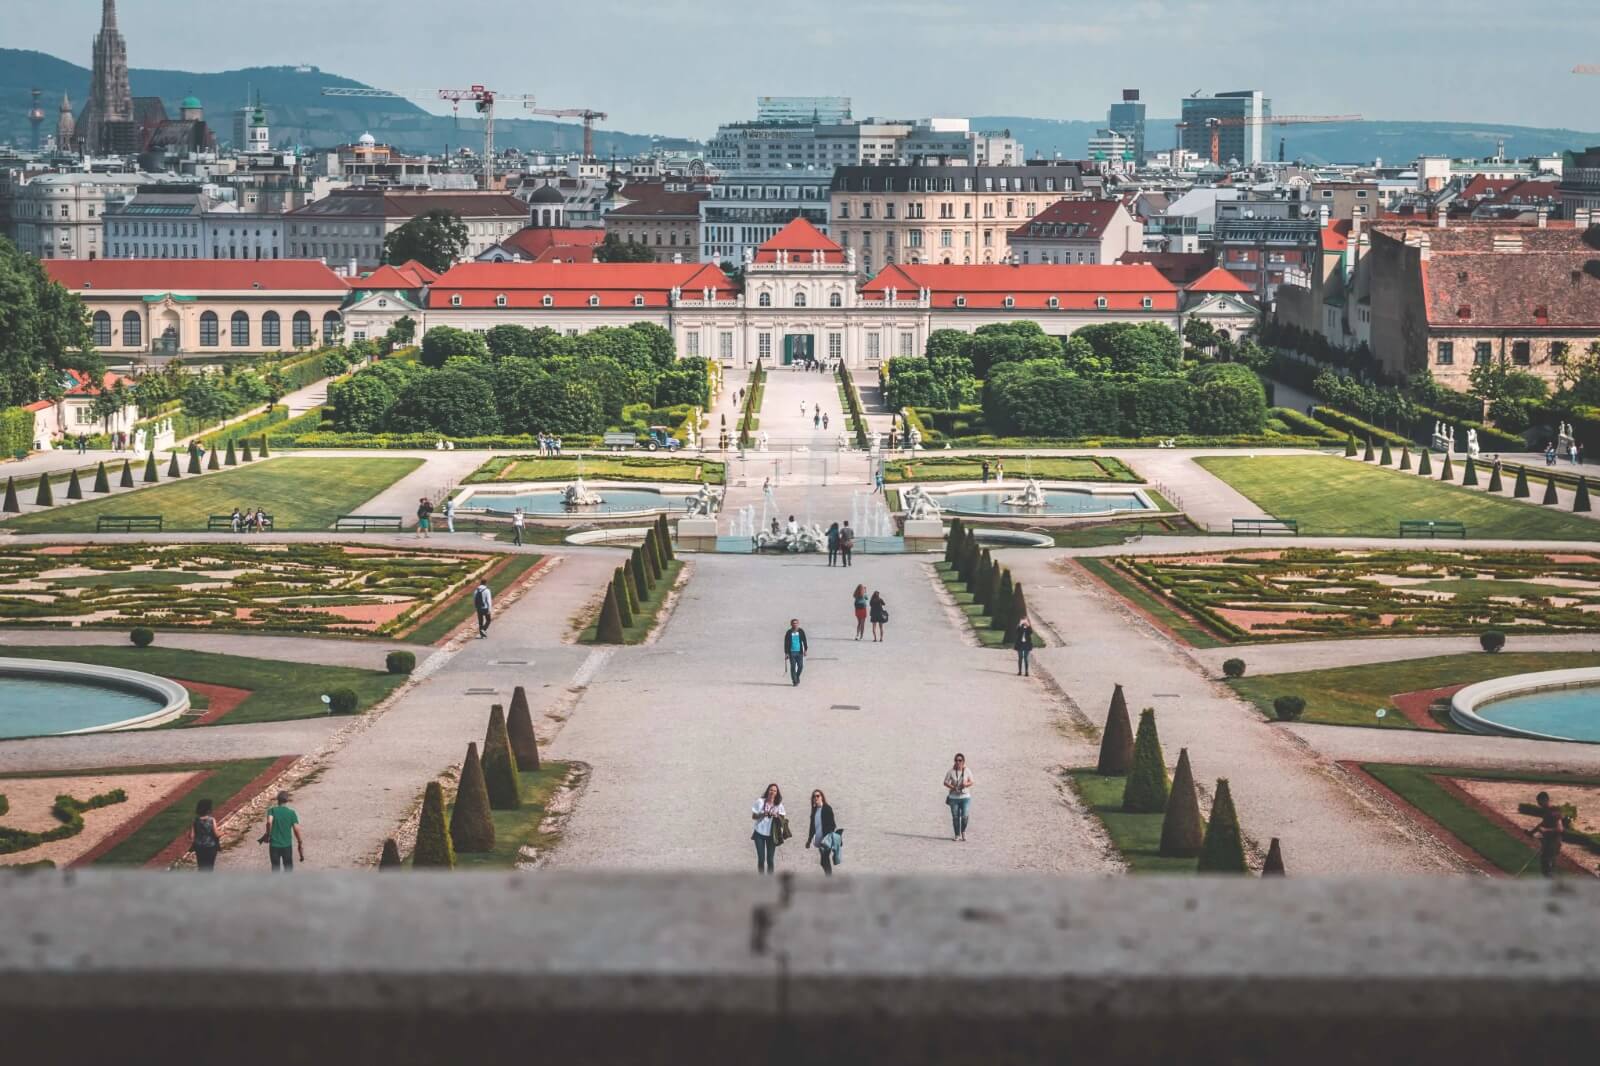 Best Photo Spots In Schönbrunn Palace Gardens For Instagram